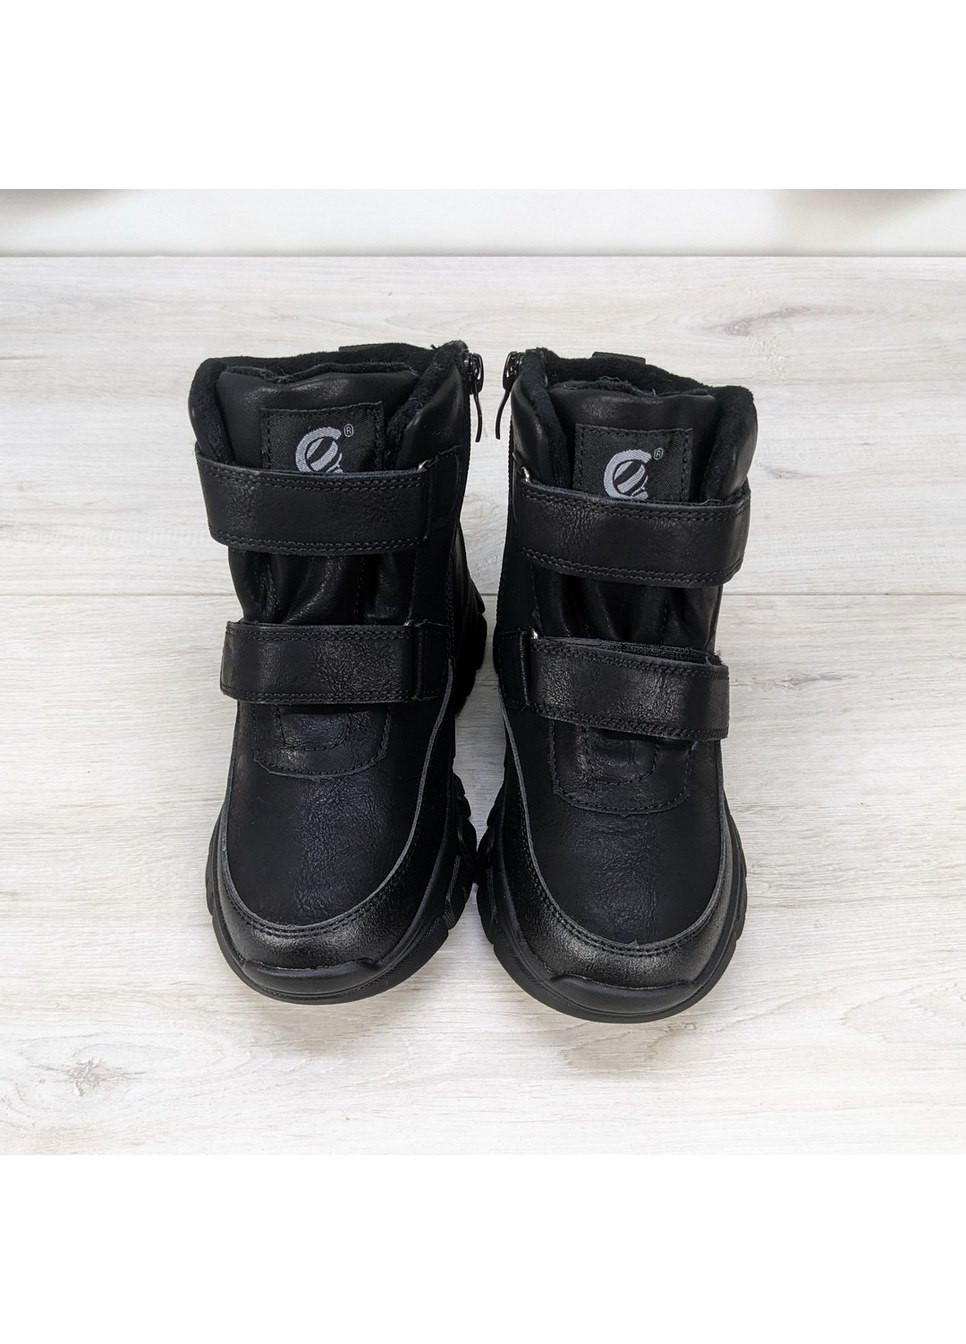 Черные повседневные зимние ботинки зимние для мальчика Clibee